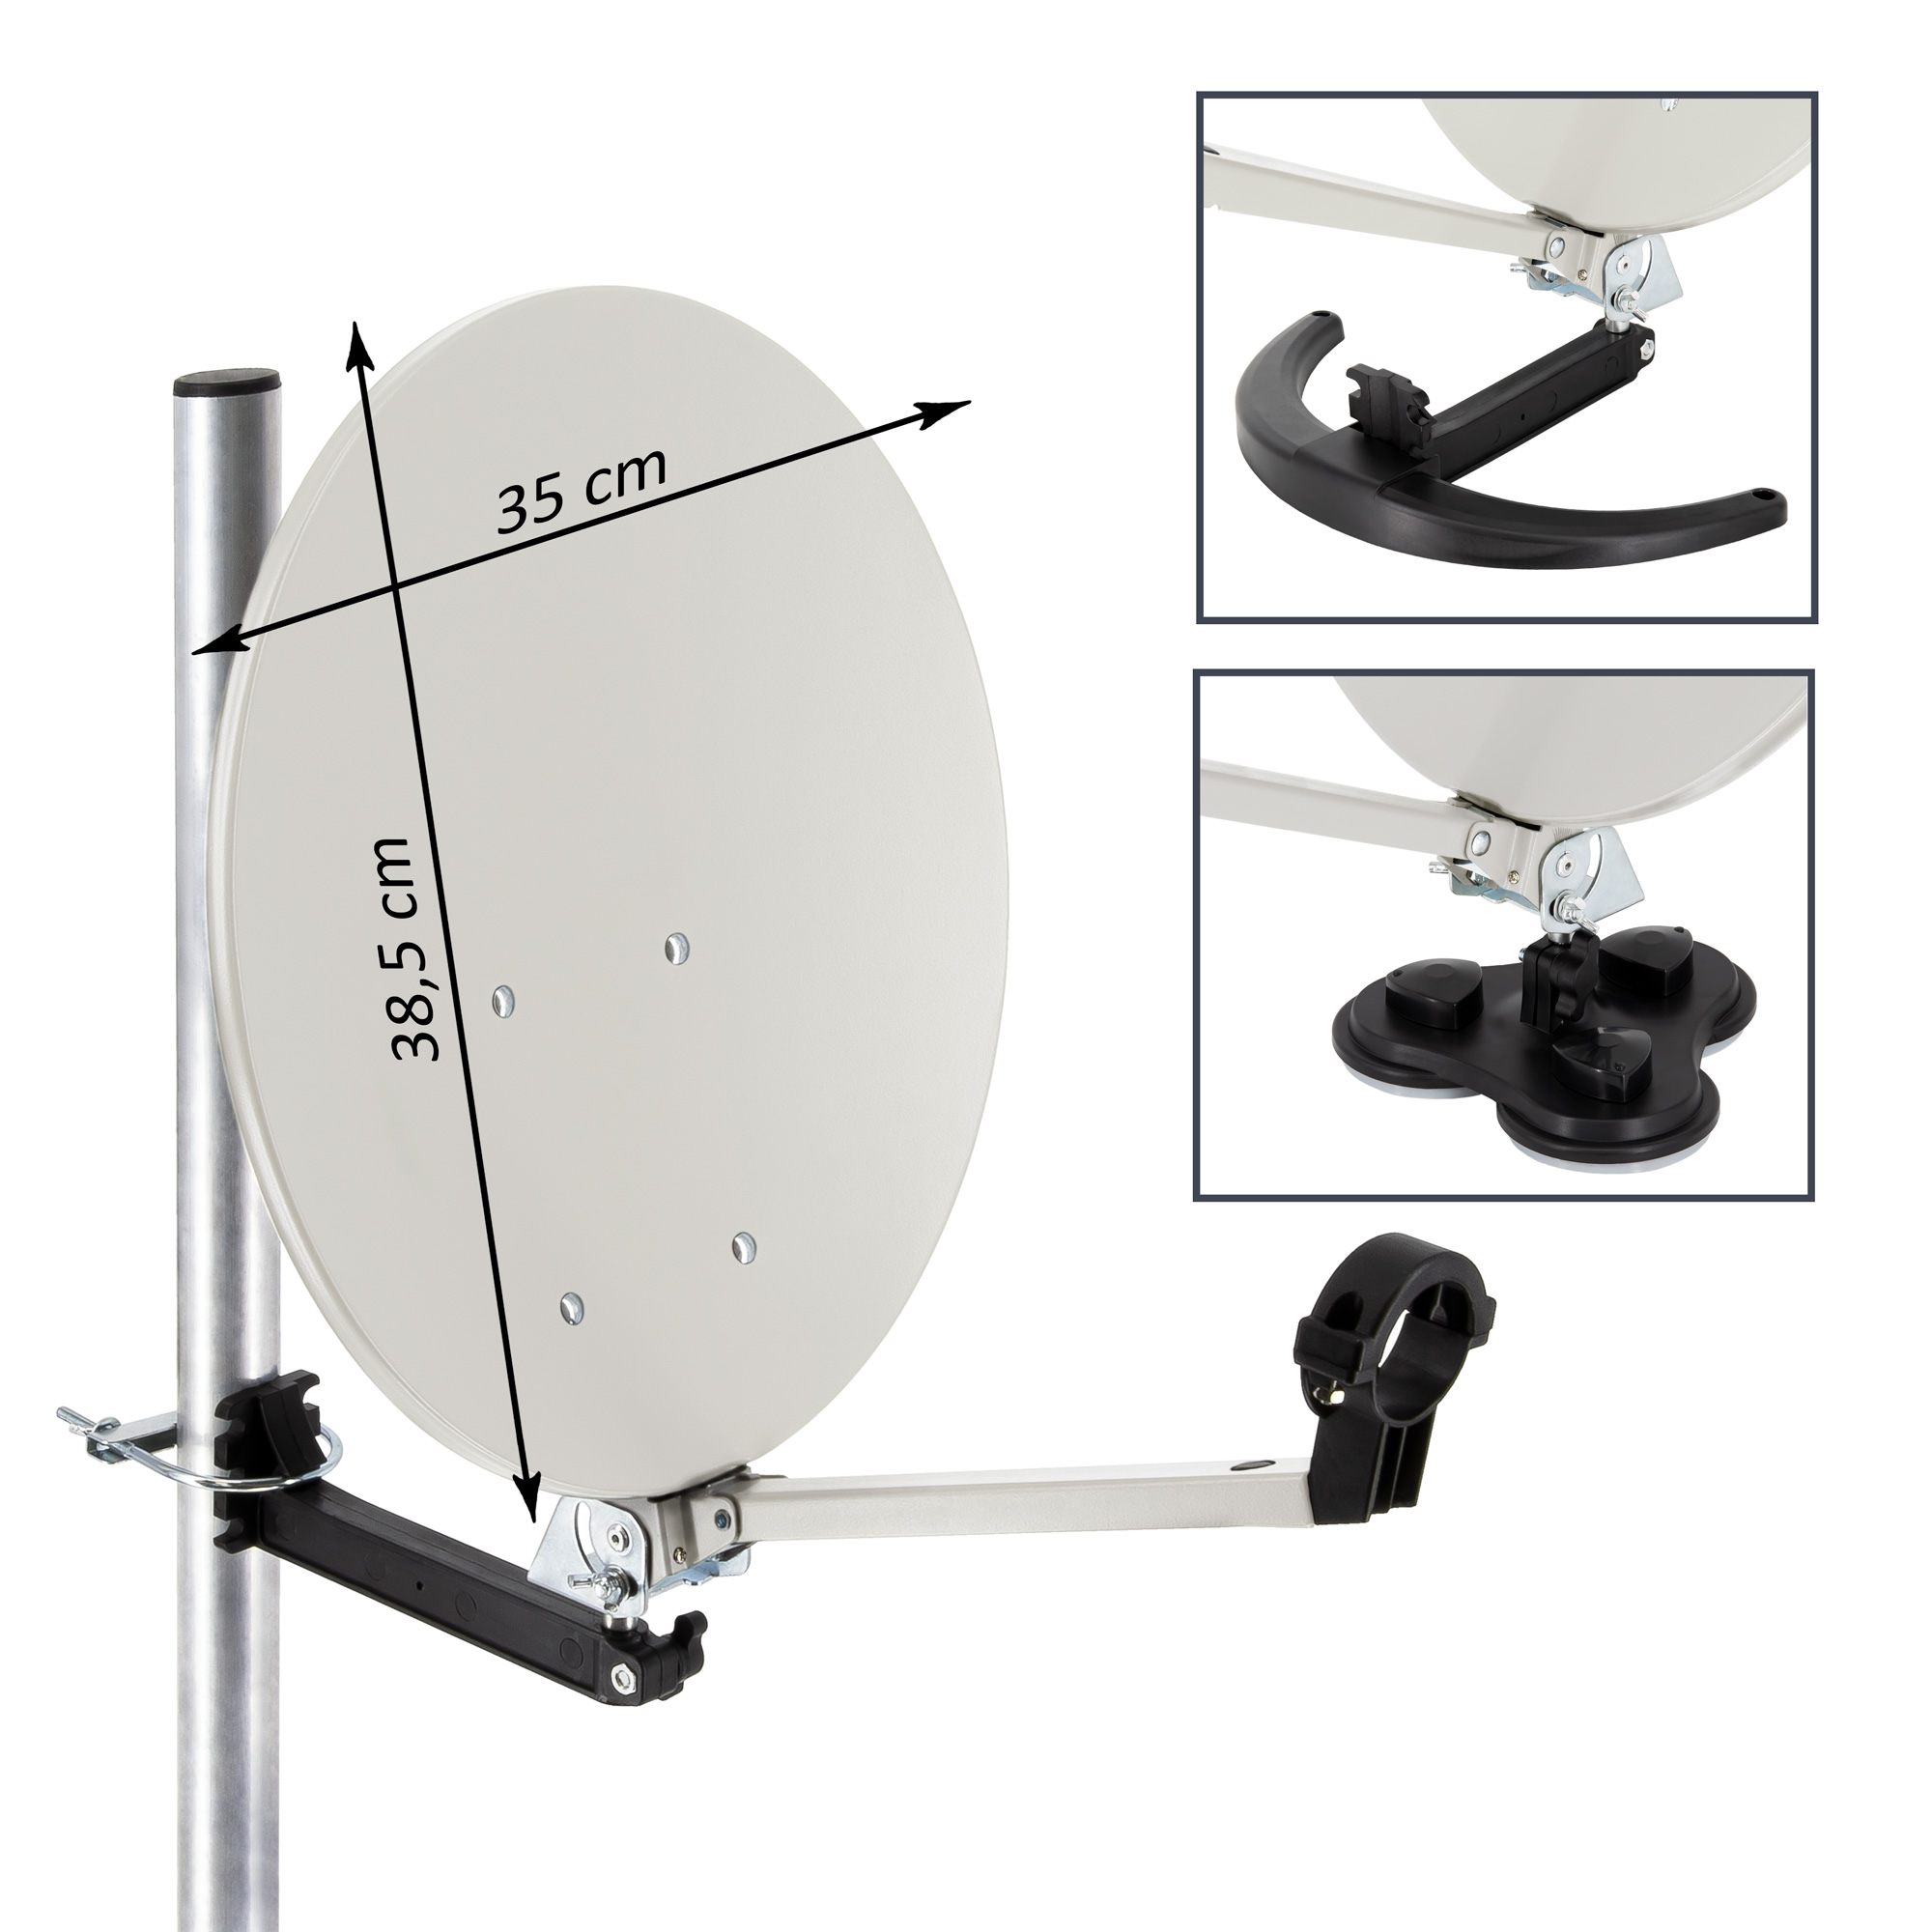 PREMIUMX Camping Anlage Anlage HD (35 LNB Single Single Antenne Stativ Kabel Satelliten Receiver LNB) Sat Koffer cm, 10m im SAT TV